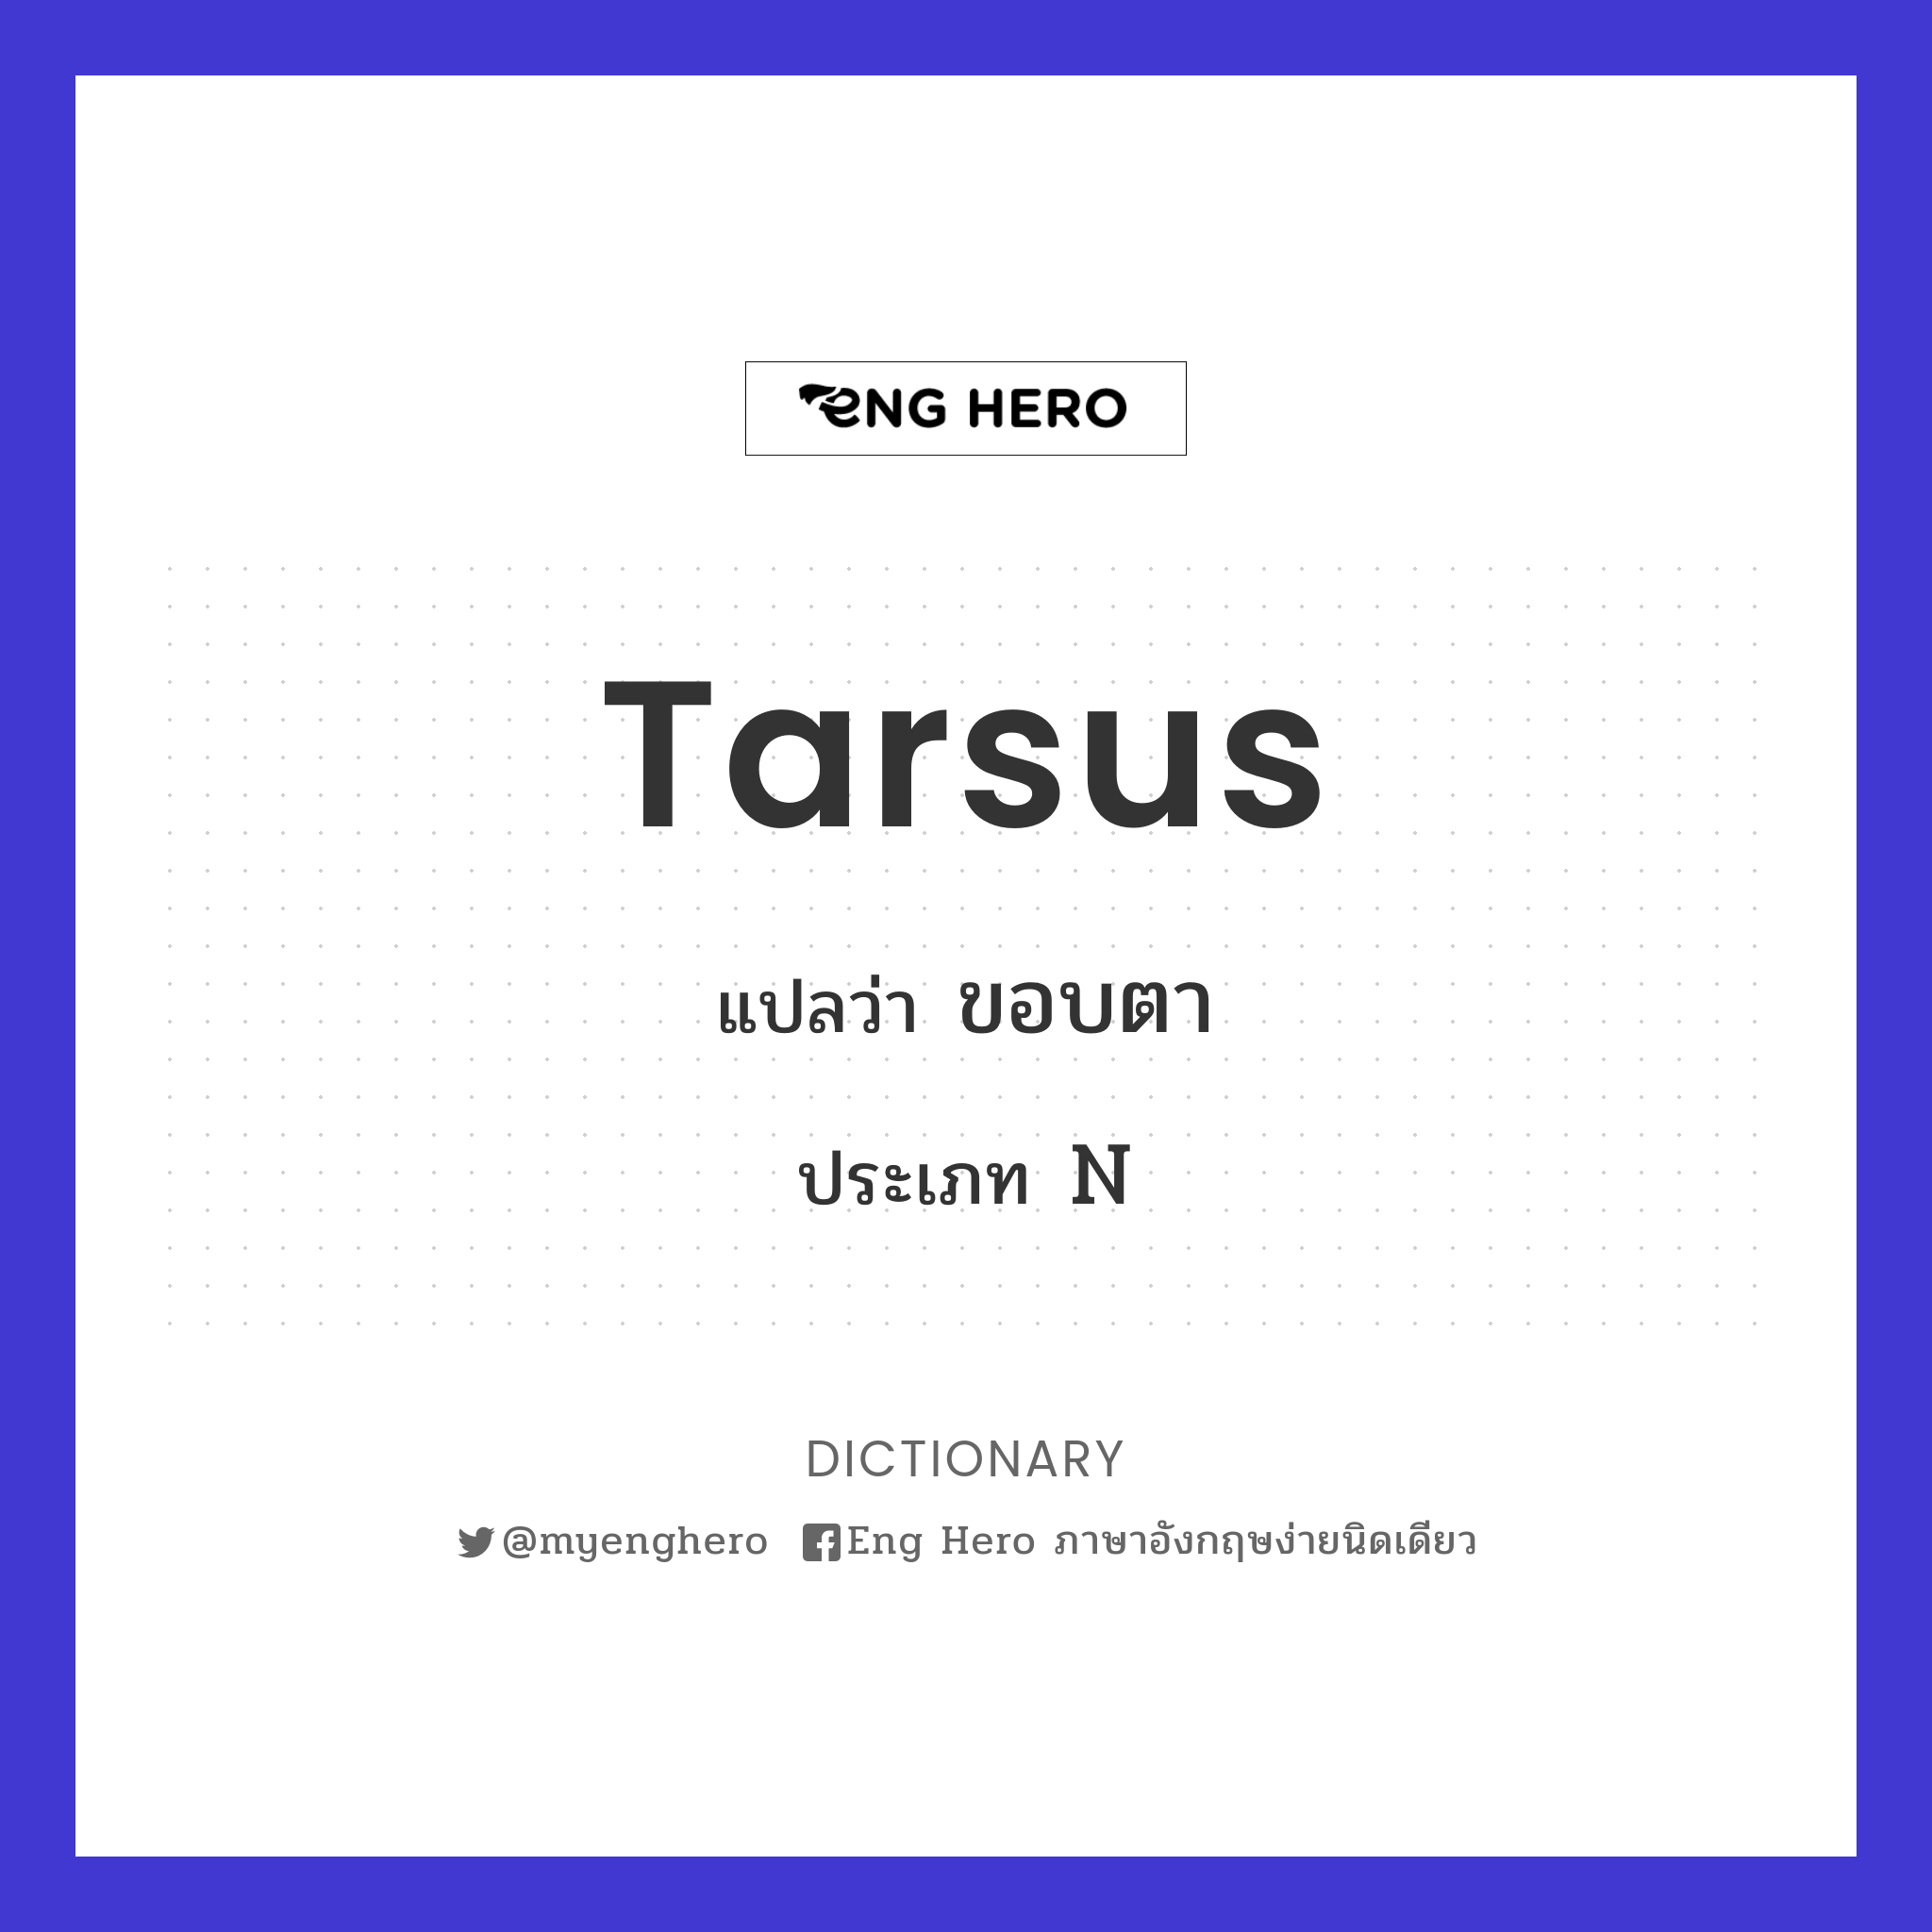 tarsus